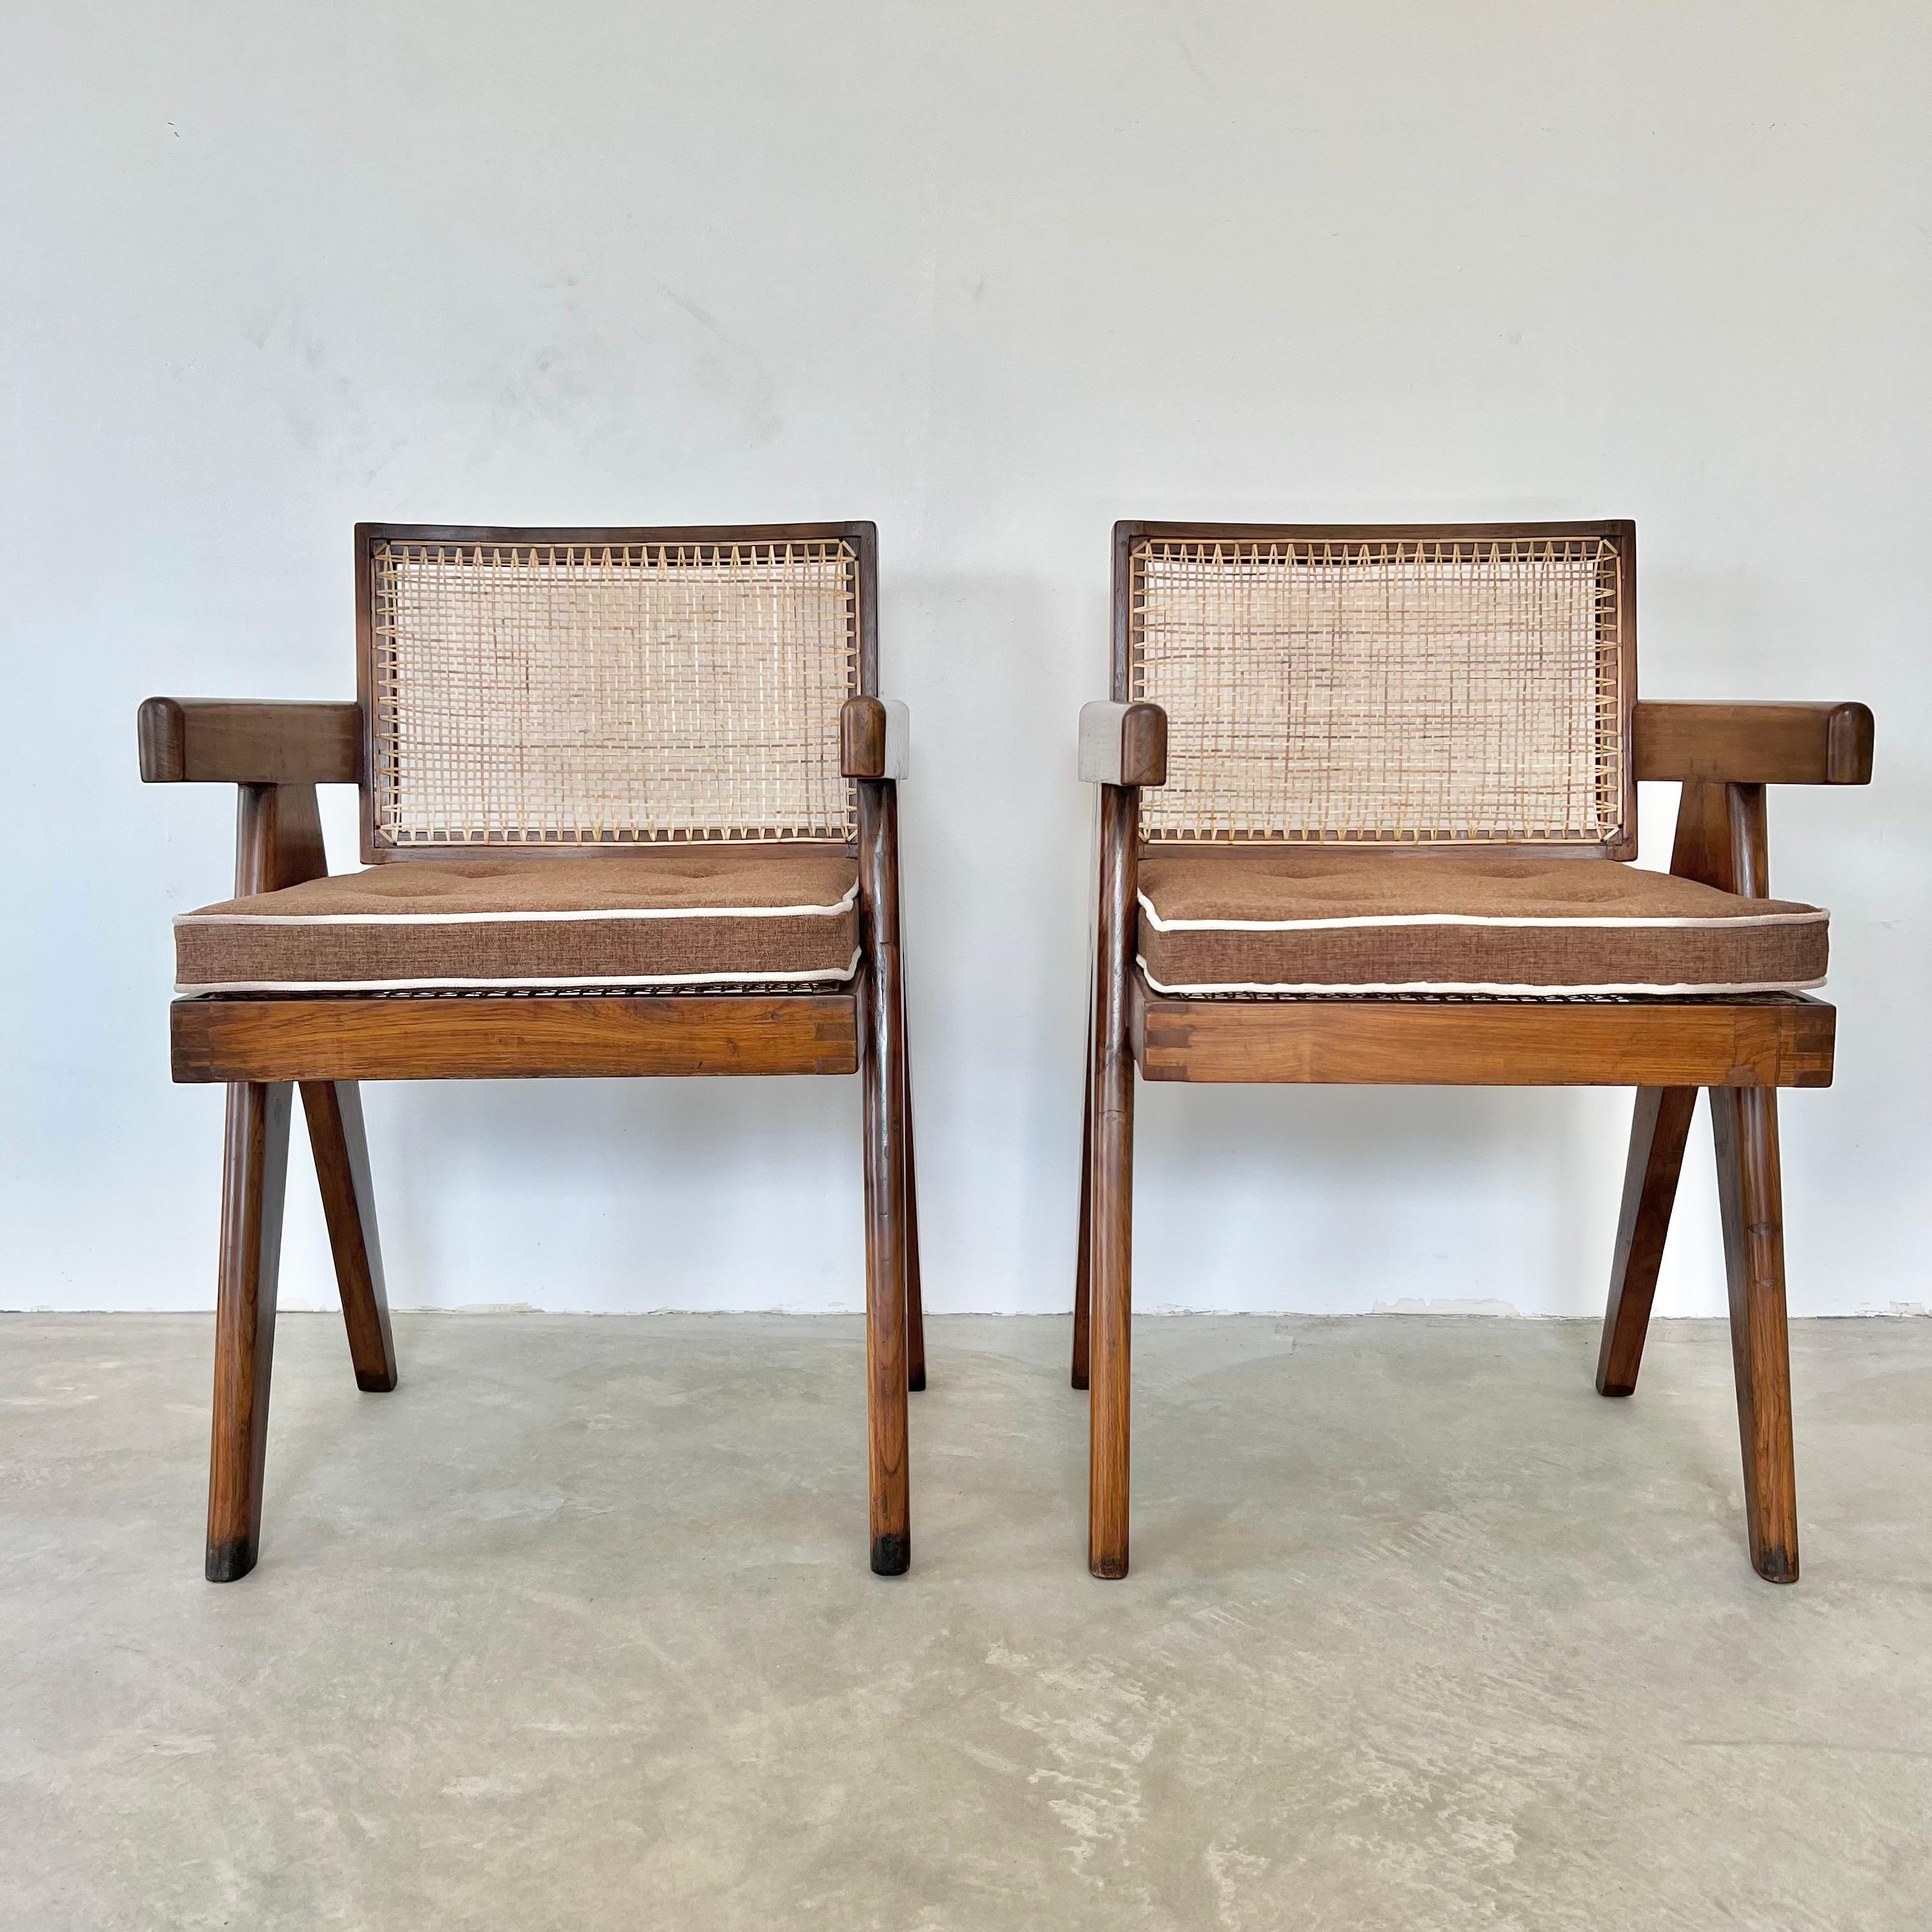 Fantastische Kollektion von Pierre Jeanneret-Bürostühlen. Modell PJ-0101-6S. Stühle aus massivem Teakholz mit Beinen im Kompassstil, Sitzfläche aus Rohr und Rückenlehne aus Rohr. Schräge, leicht gebogene Rückenlehne. Auf der Rückenlehne beider